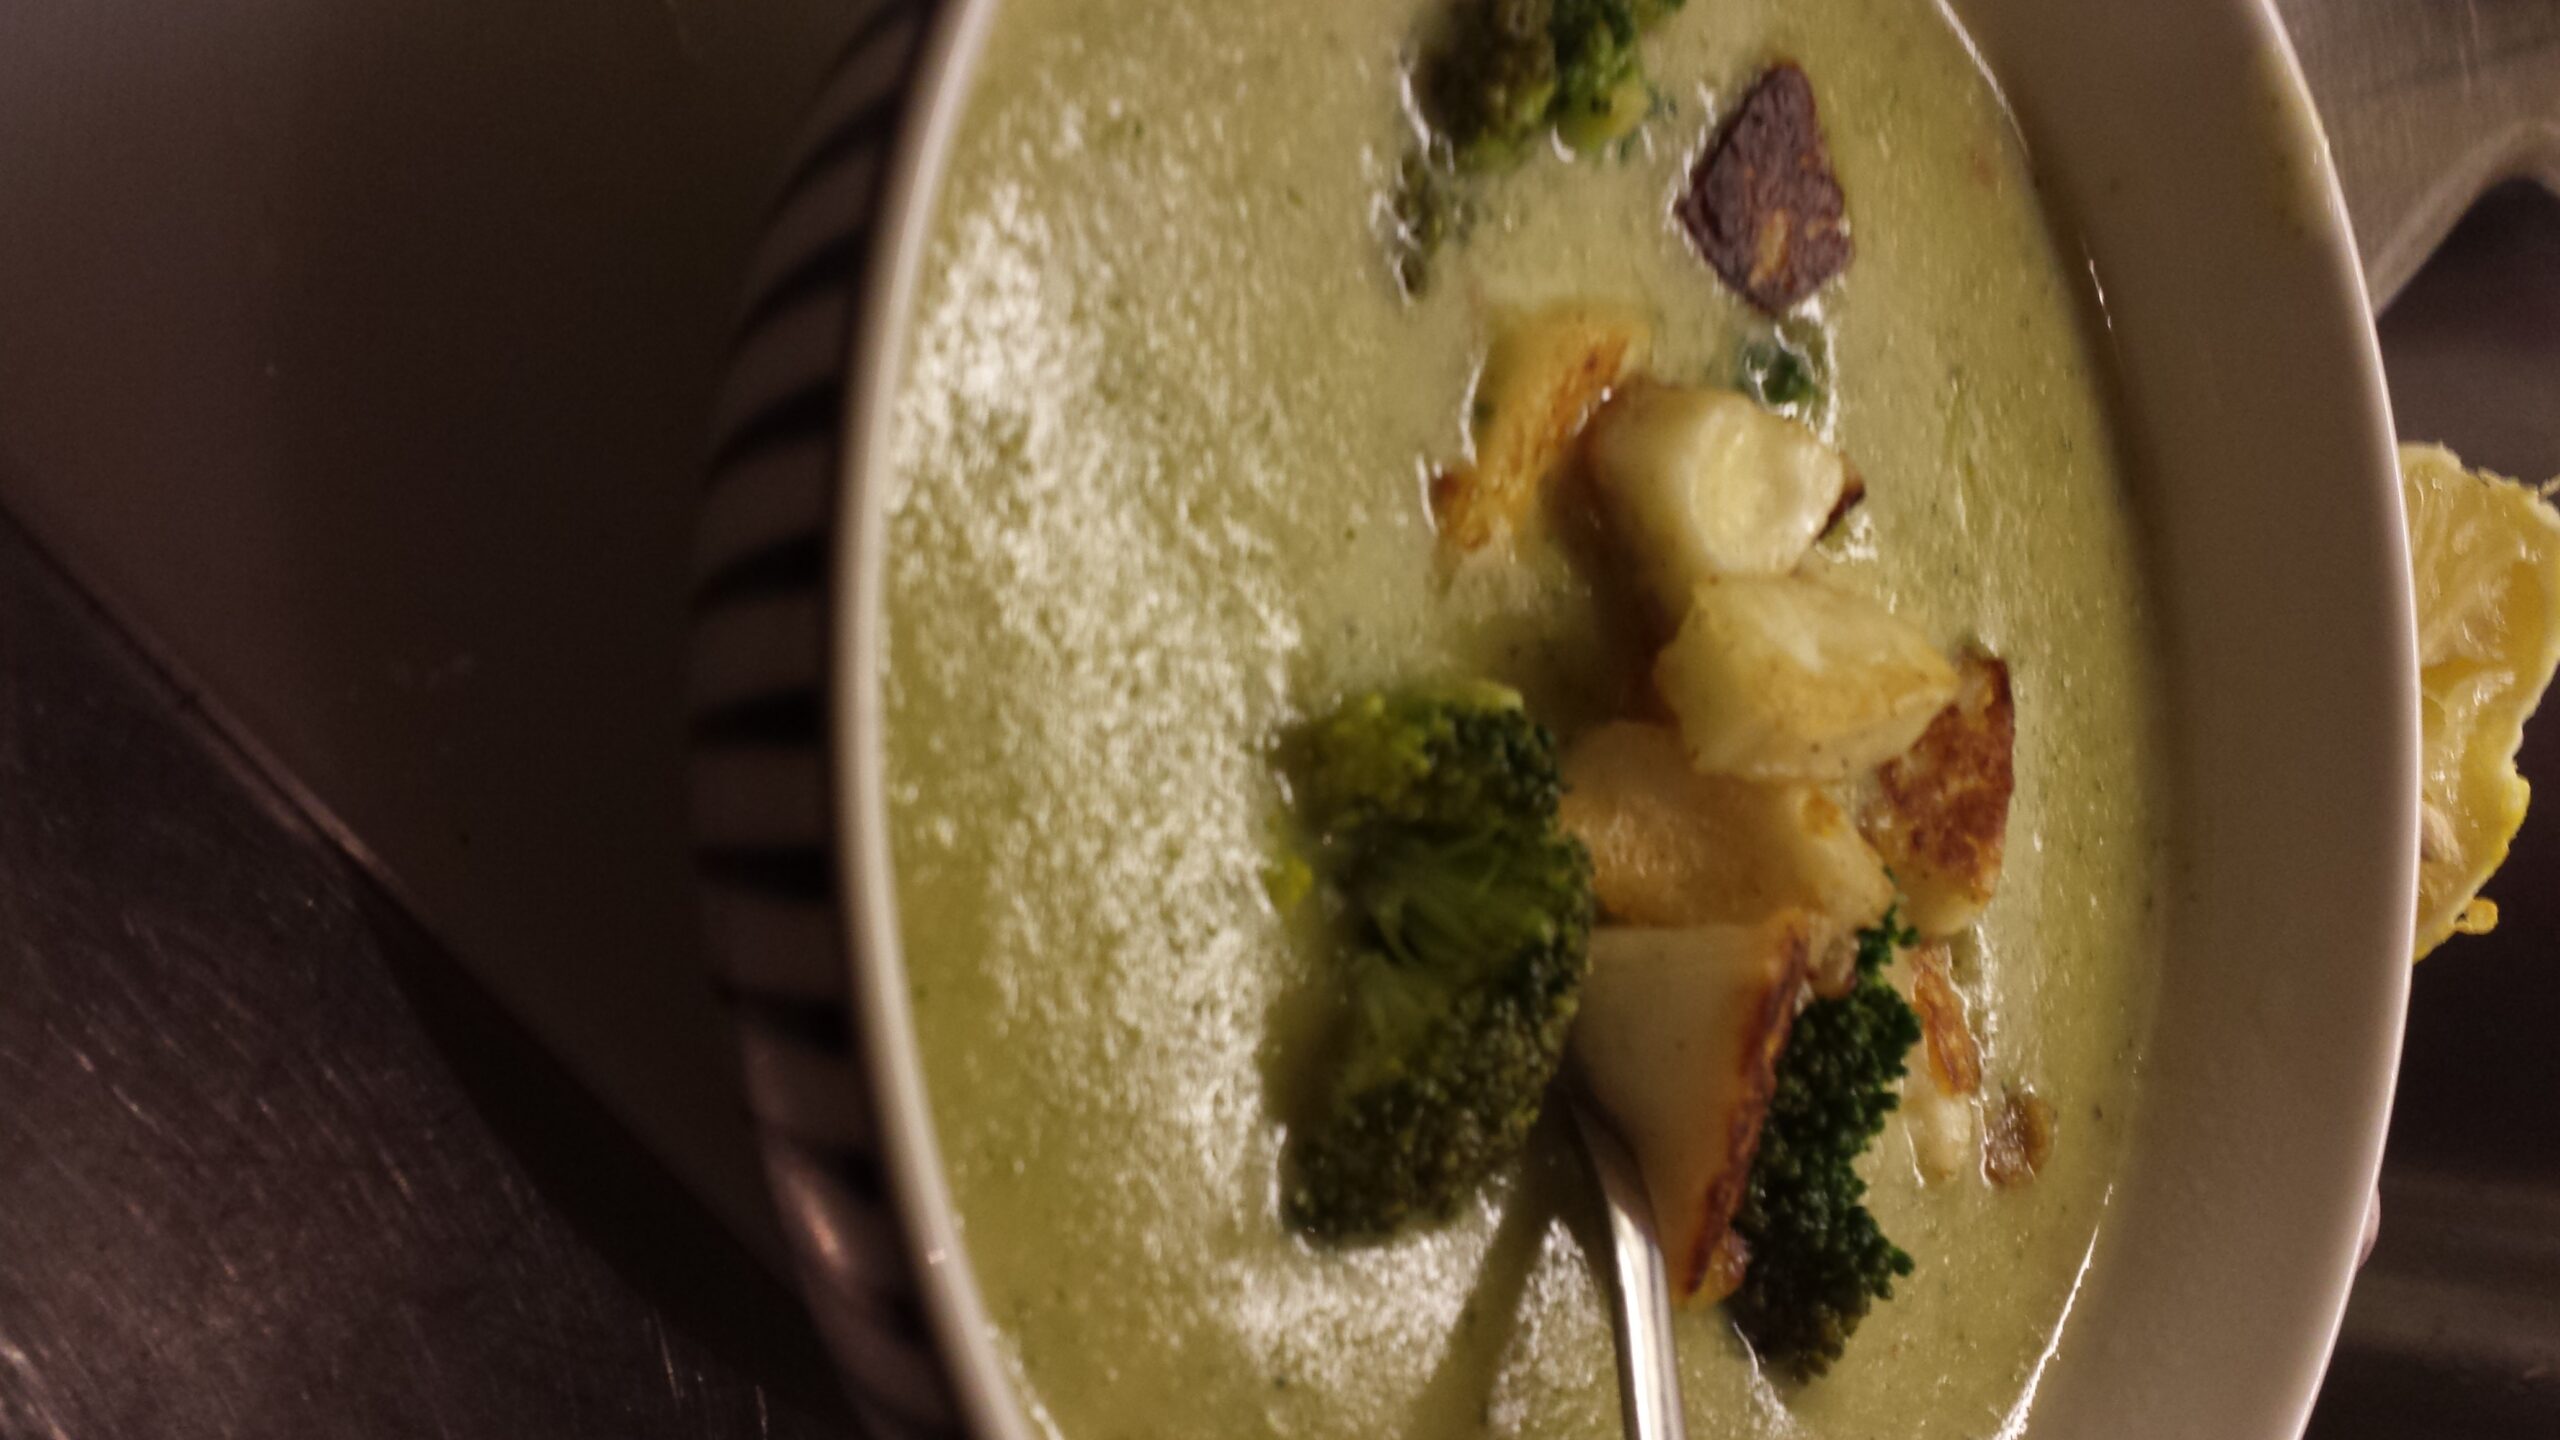 Broccolisoppa toppad med halloumi och broccoli